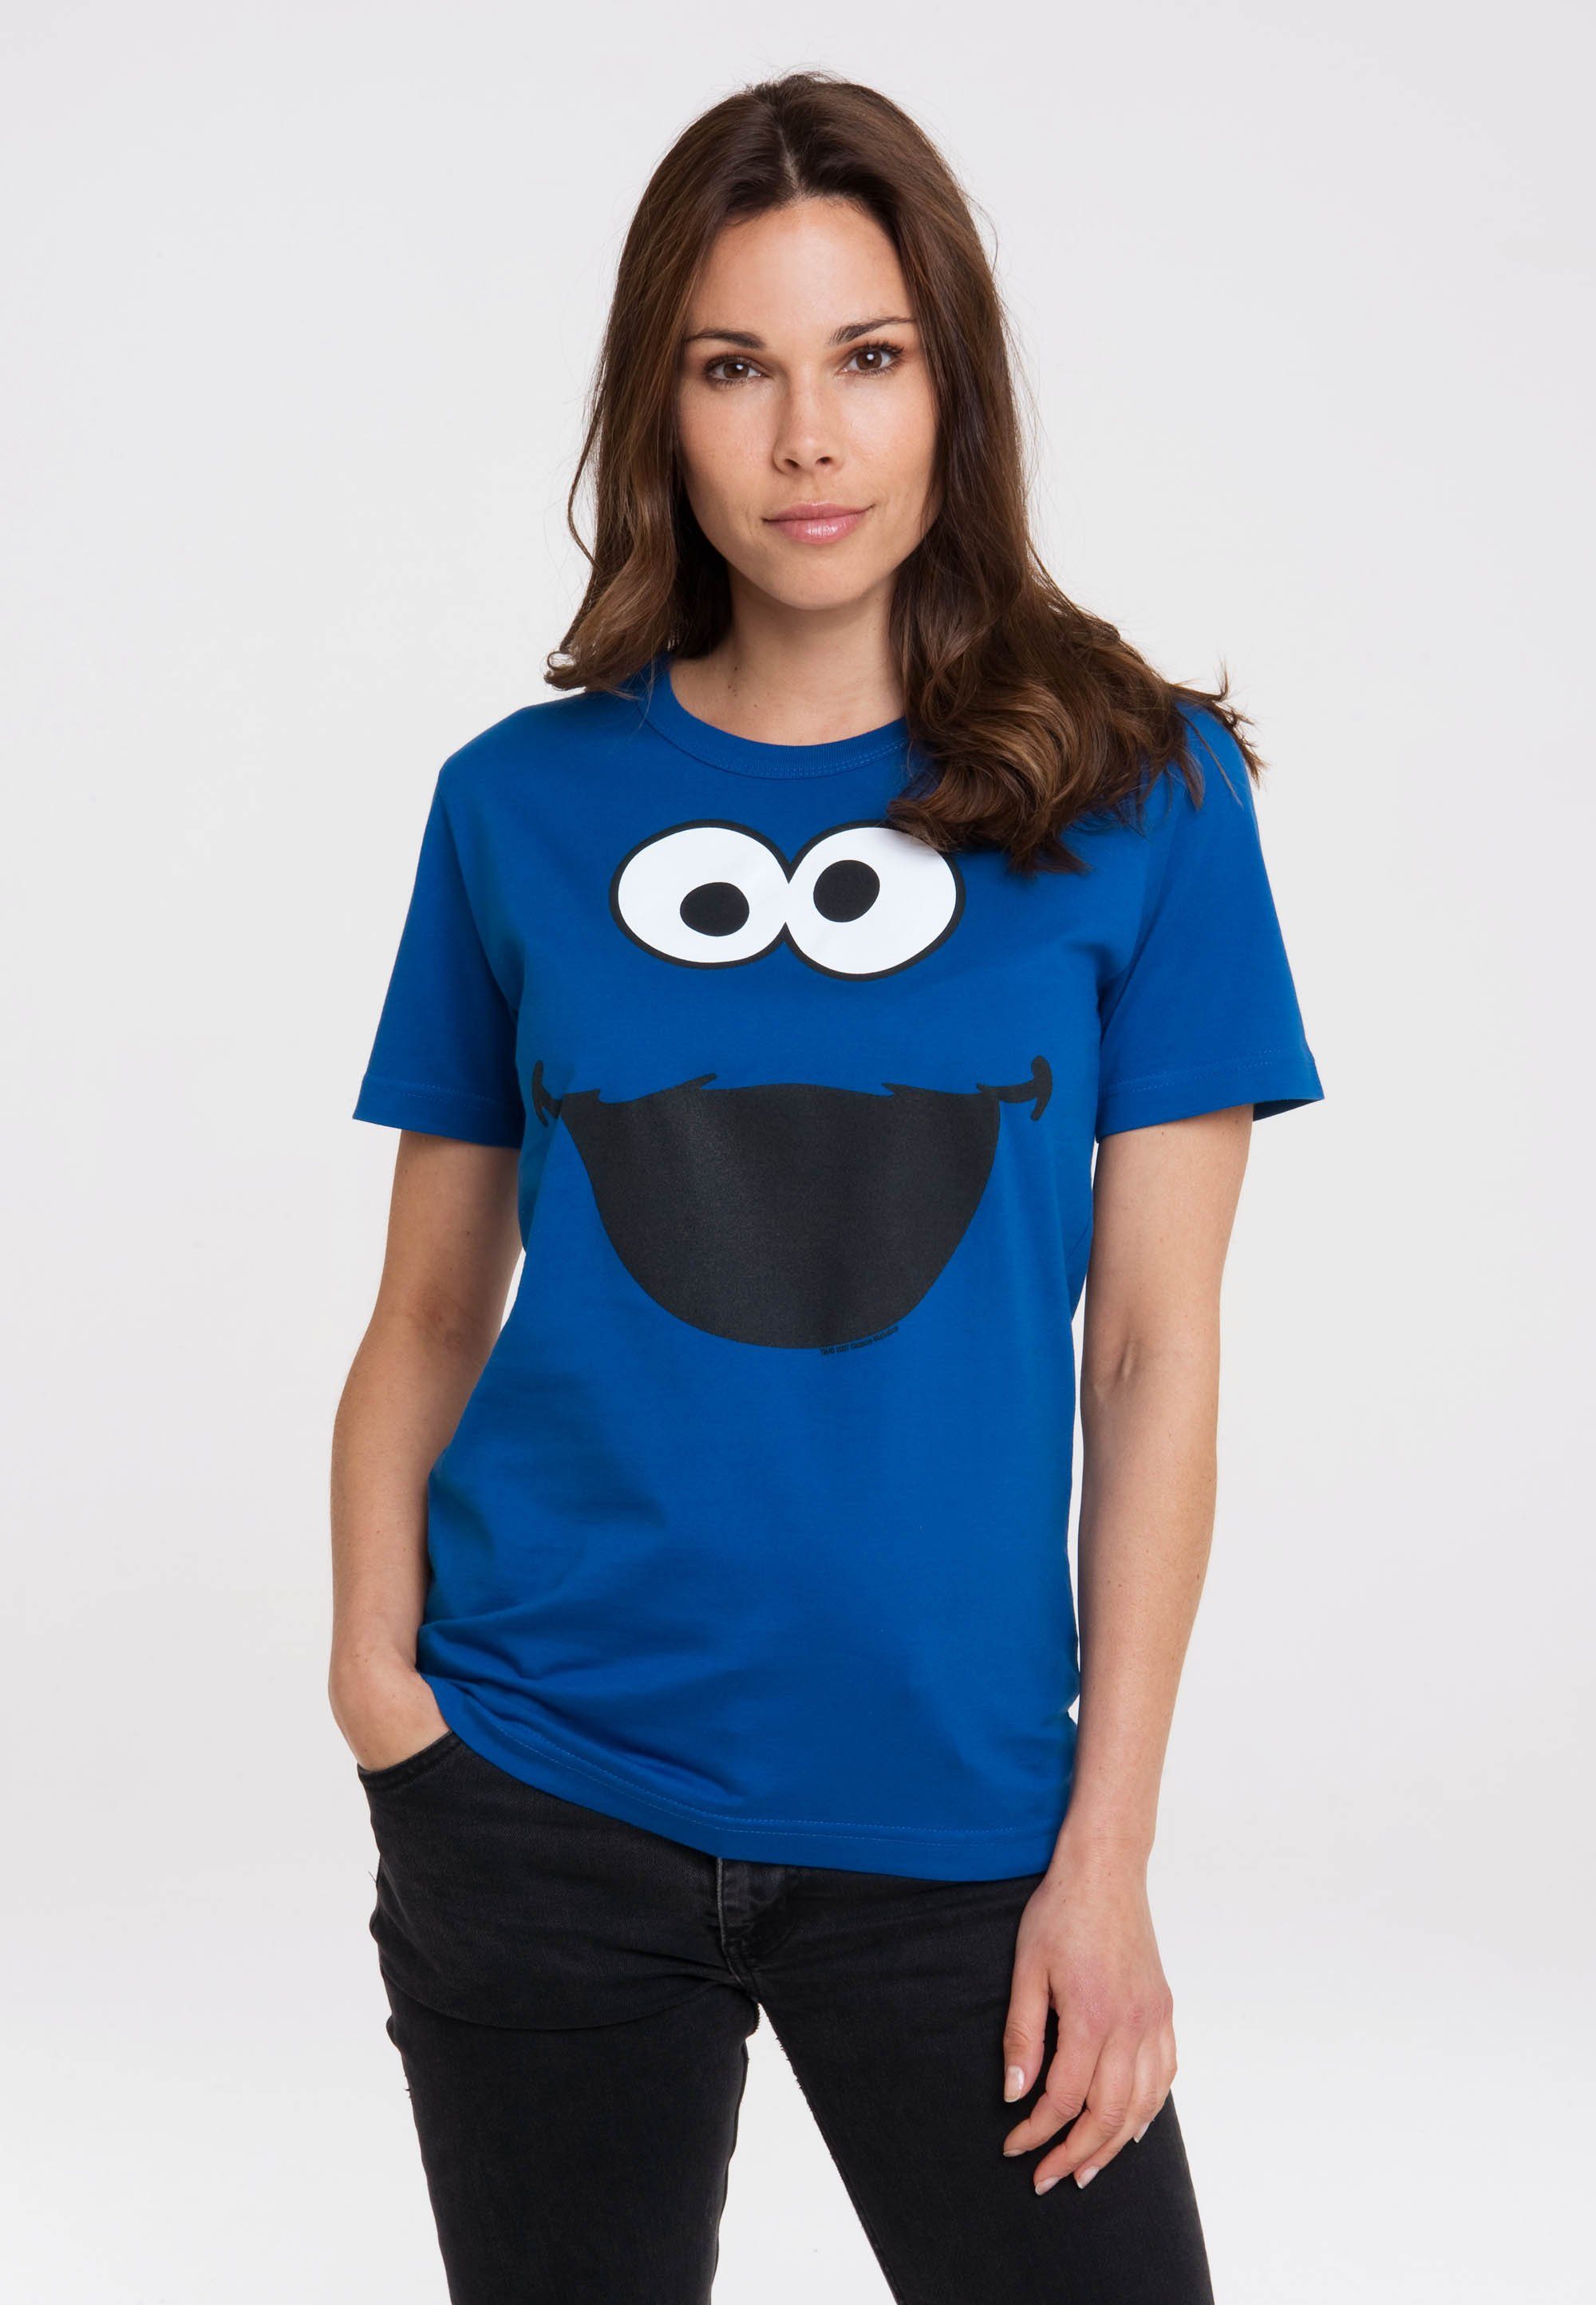 LOGOSHIRT mit Gesicht Aus reiner Print, mit - Design lizenziertem T-Shirt Baumwolle Sesamstraße gefertigt authentischem Krümelmonster